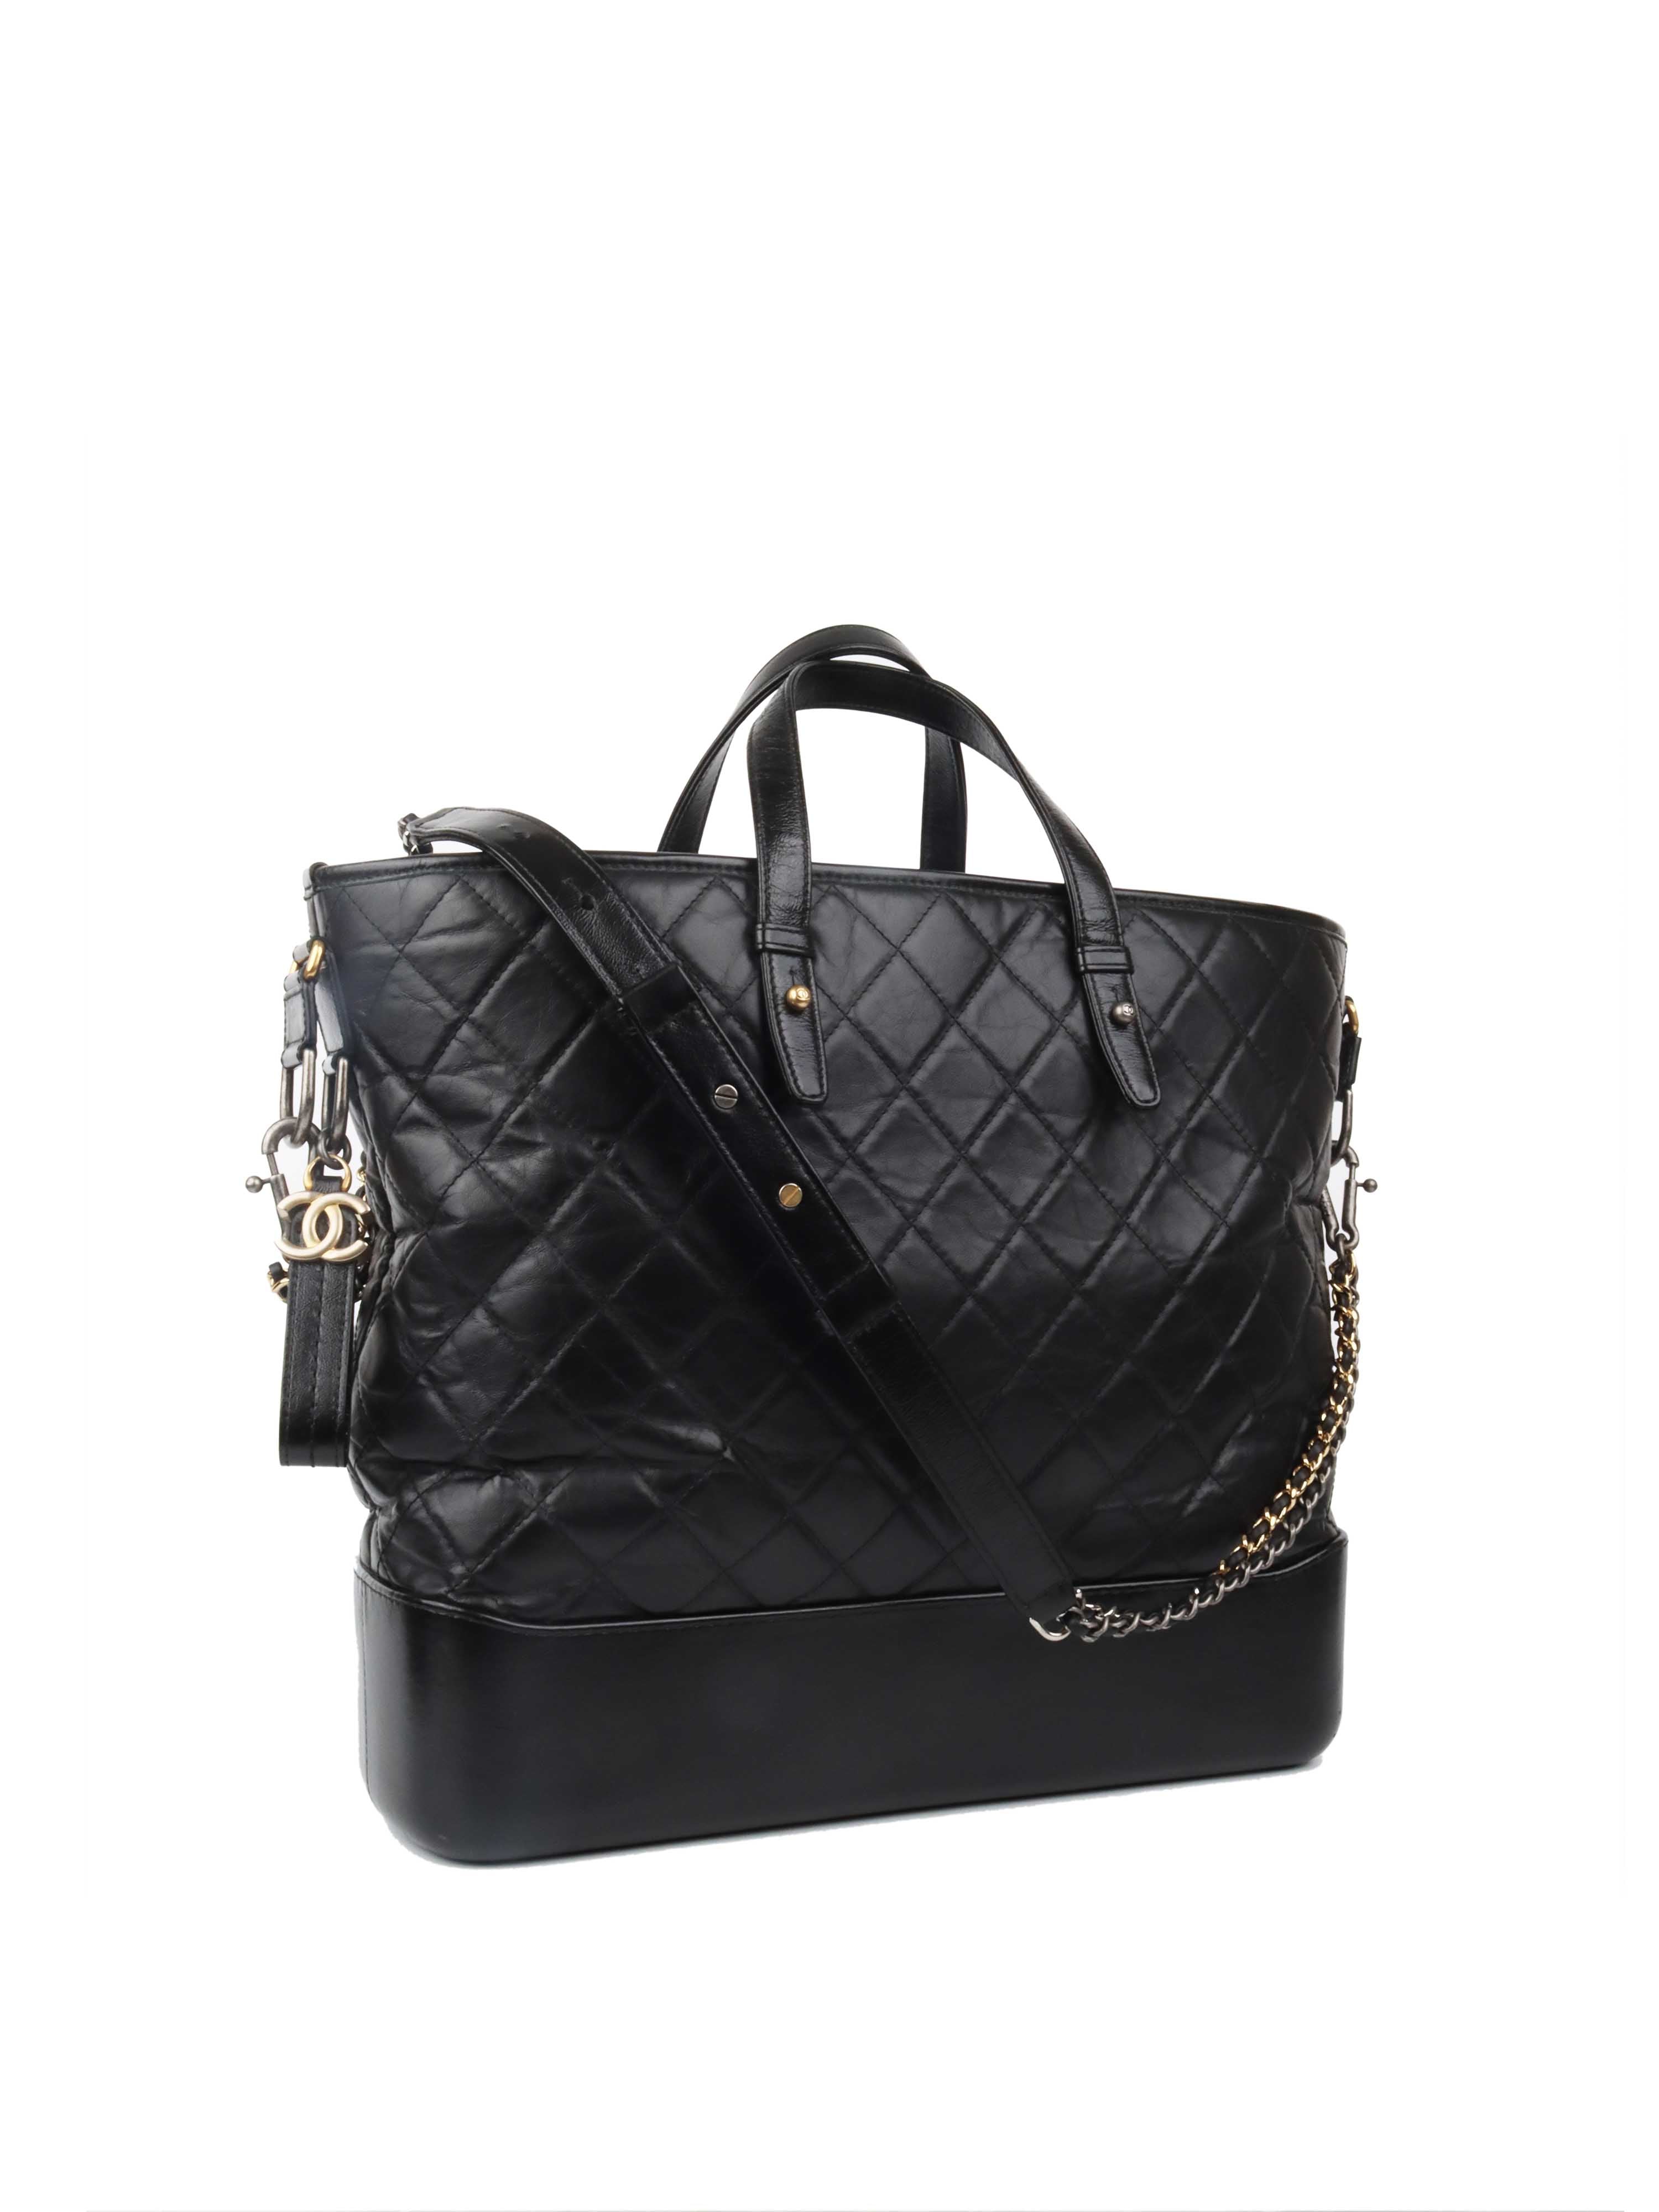 Chanel Medium Black Gabrielle Bag – Votre Luxe